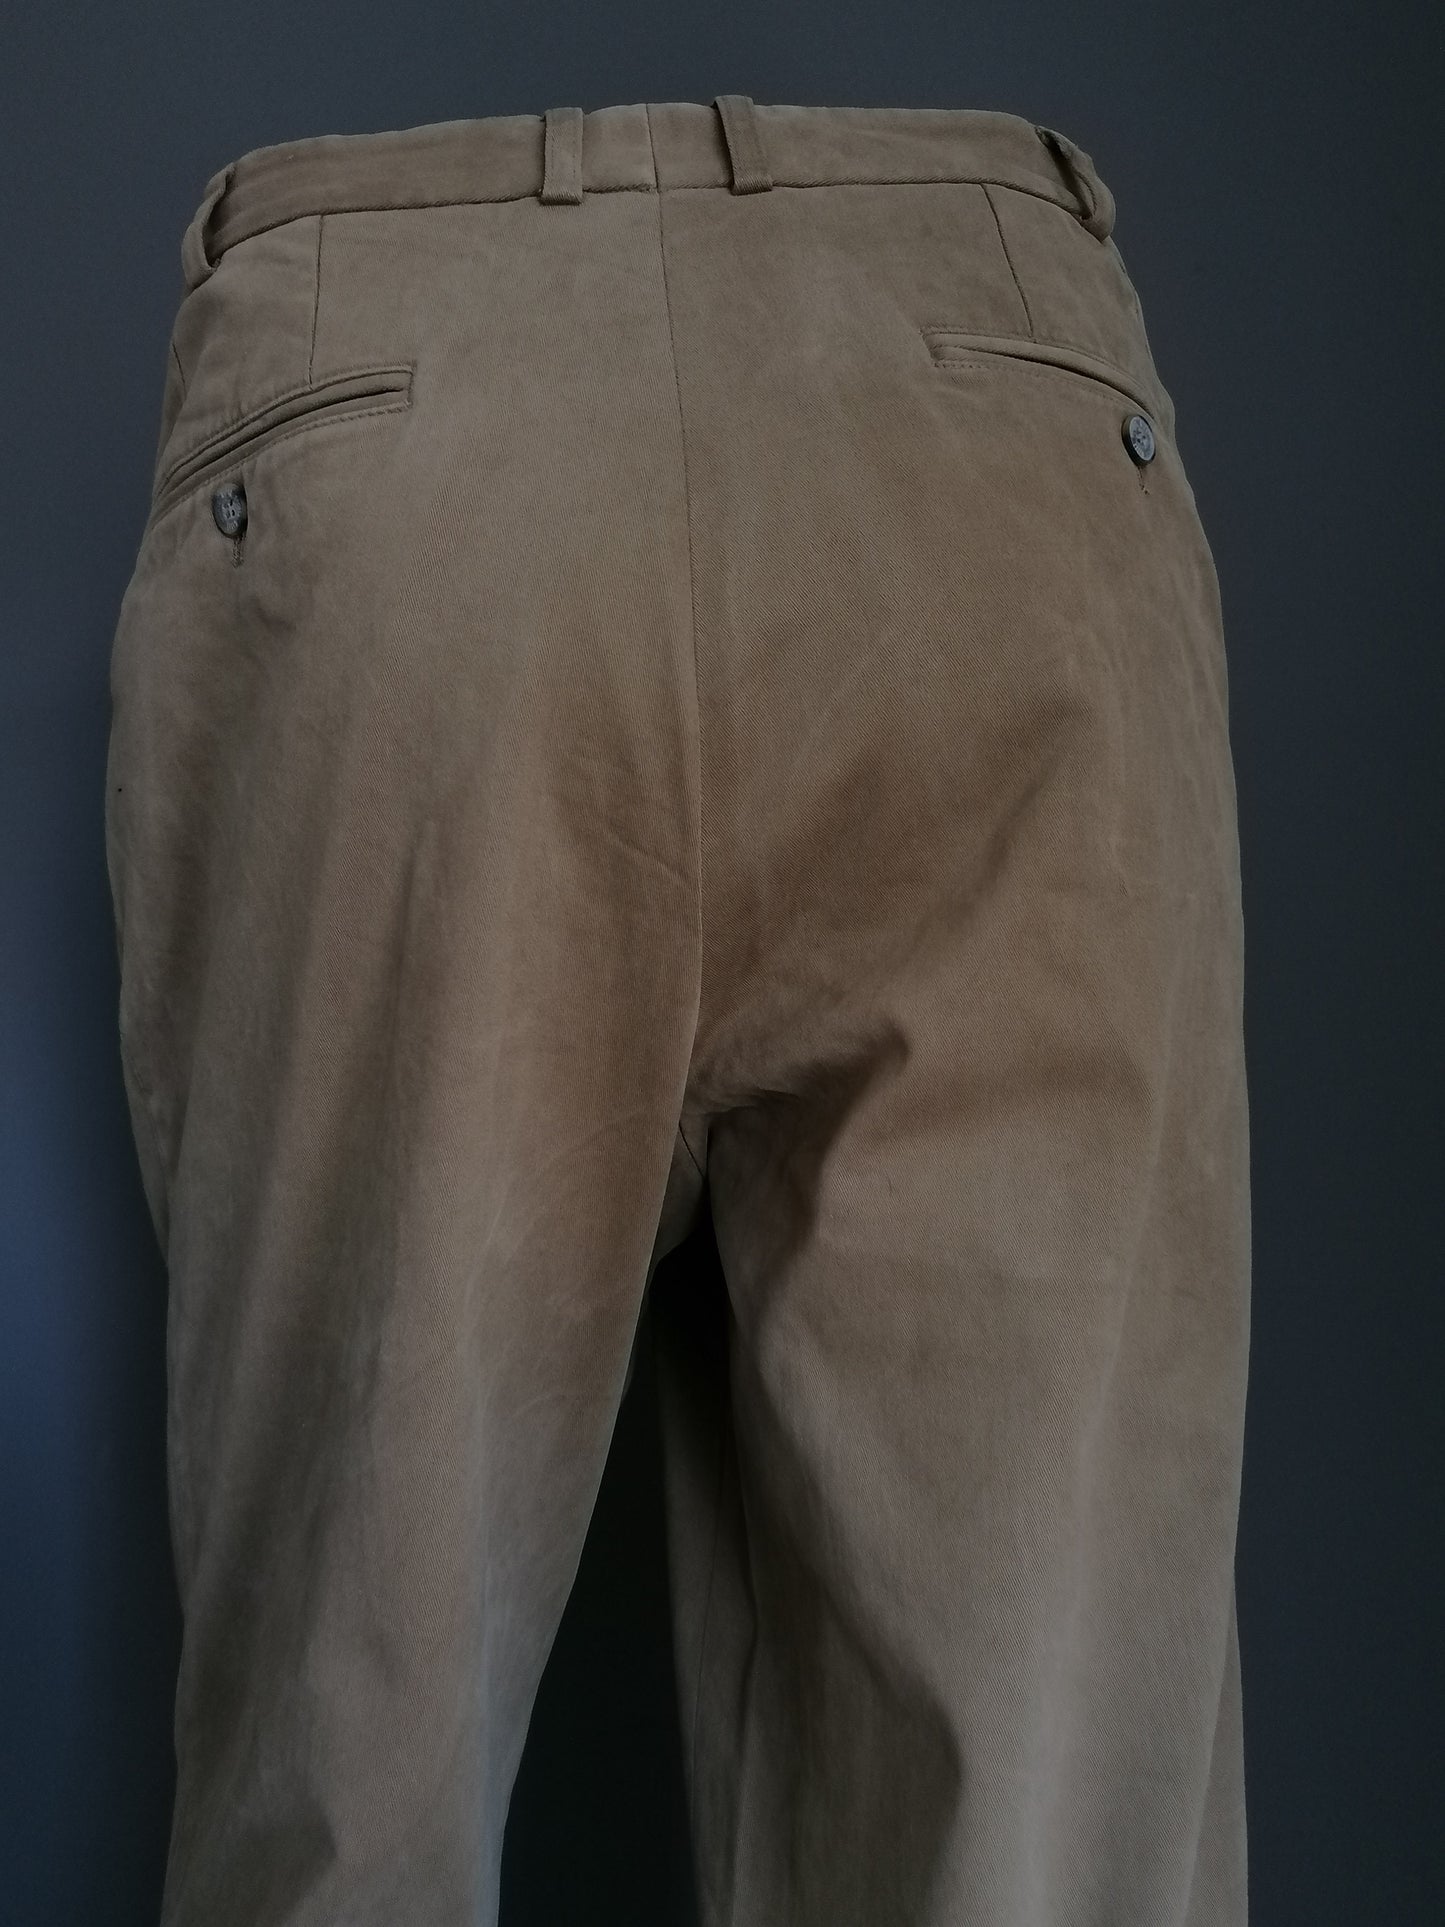 Pantaloni Hiltl. Colorato beige. Taglia 52 / l